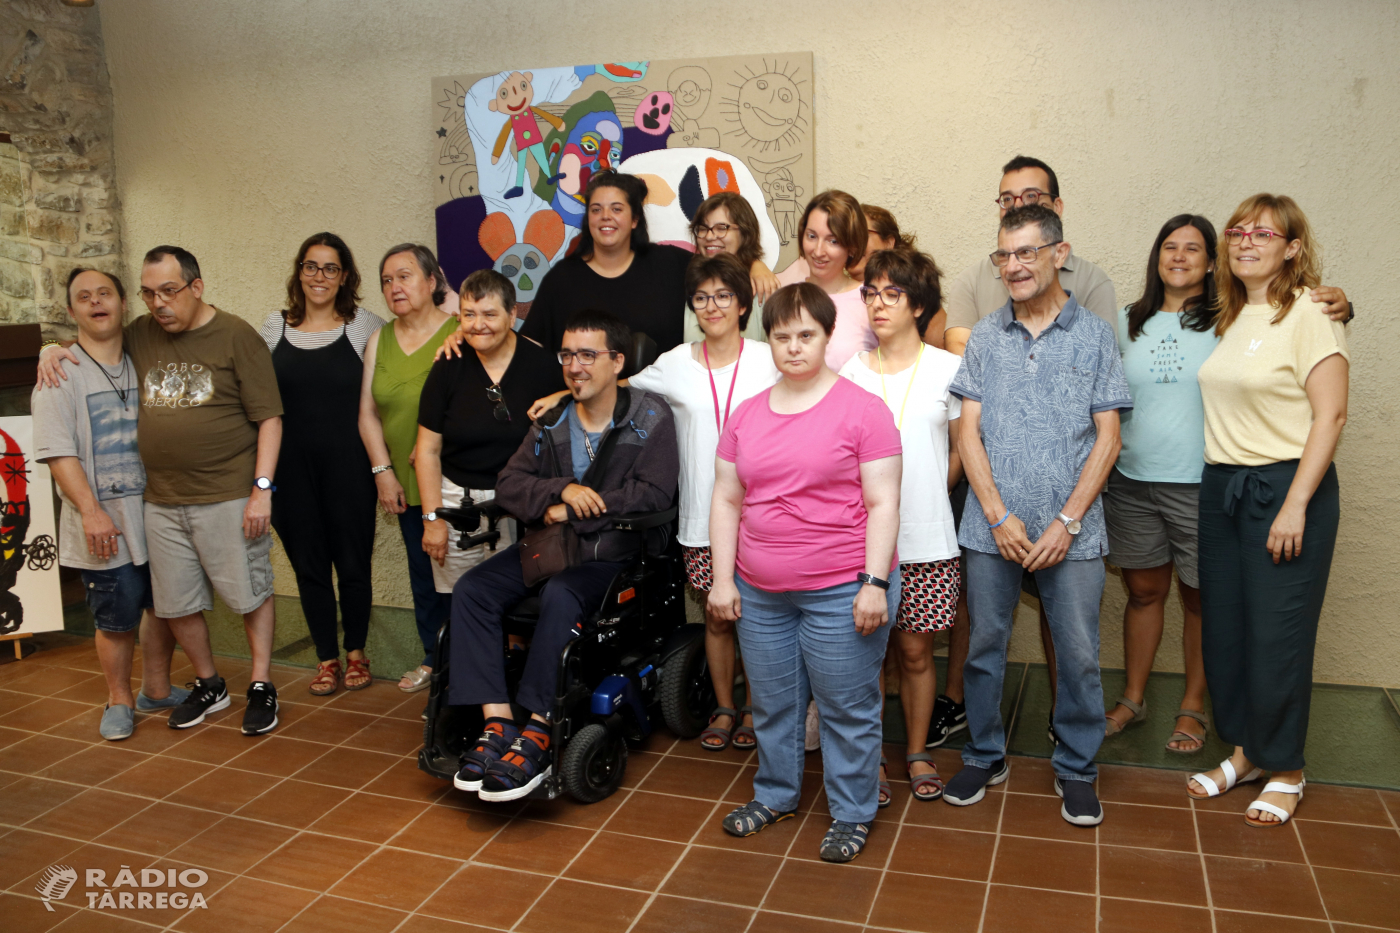 L'artista mallorquina Ela Fidalgo crea una obra conjunta amb persones amb discapacitat de l'Associació Alba